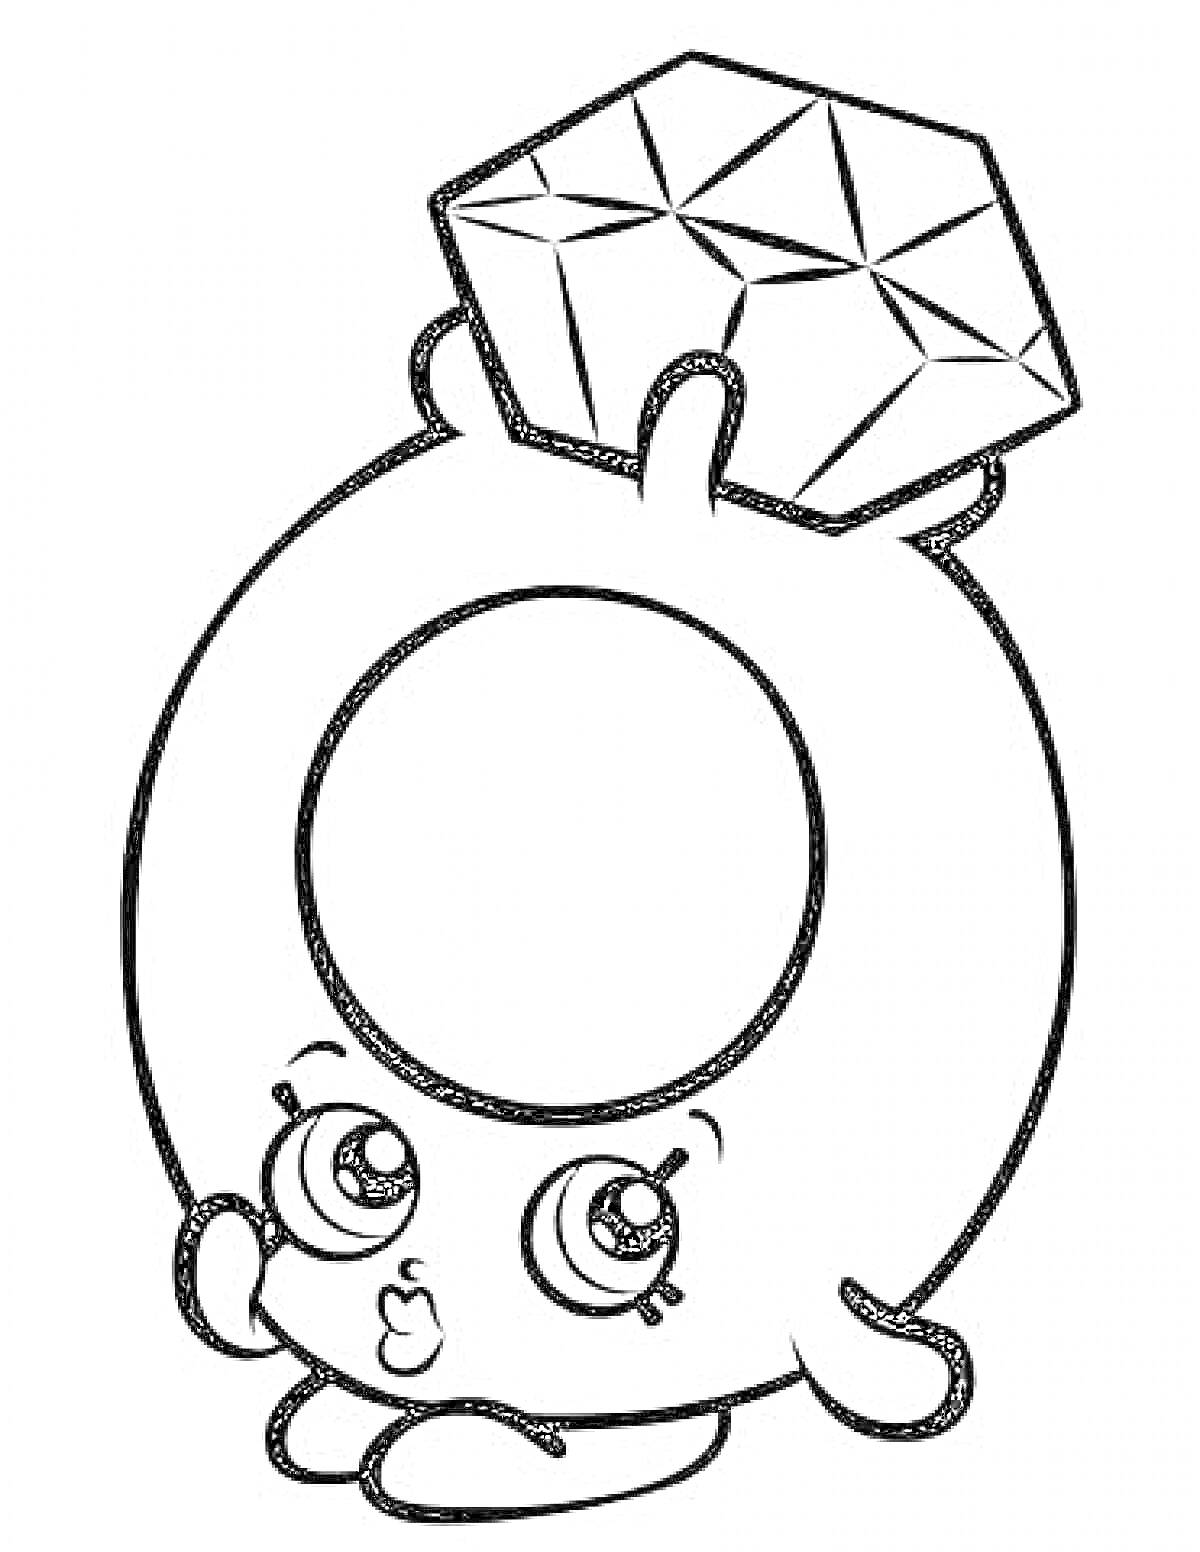 Раскраска Раскраска с алмазом в виде персонажа с большими глазами и милым лицом